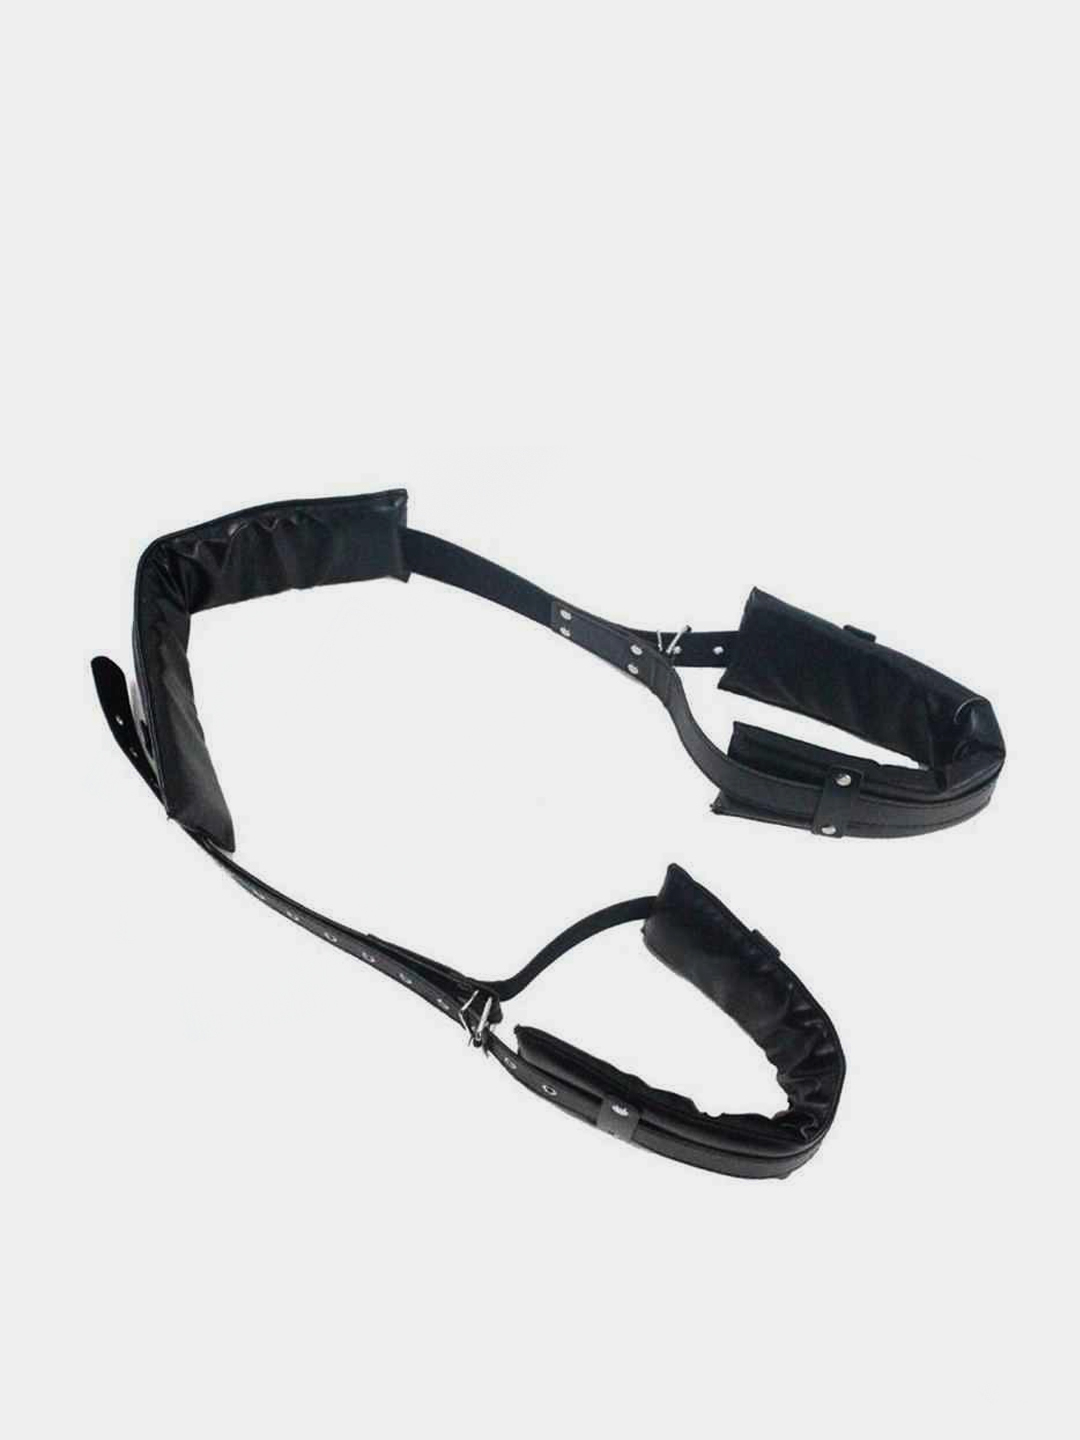 БДСМ-бондаж для связывания и обездвиживания,кожаные ремни для ног для  ролевых игр, косплея купить по цене 650 ₽ в интернет-магазине KazanExpress